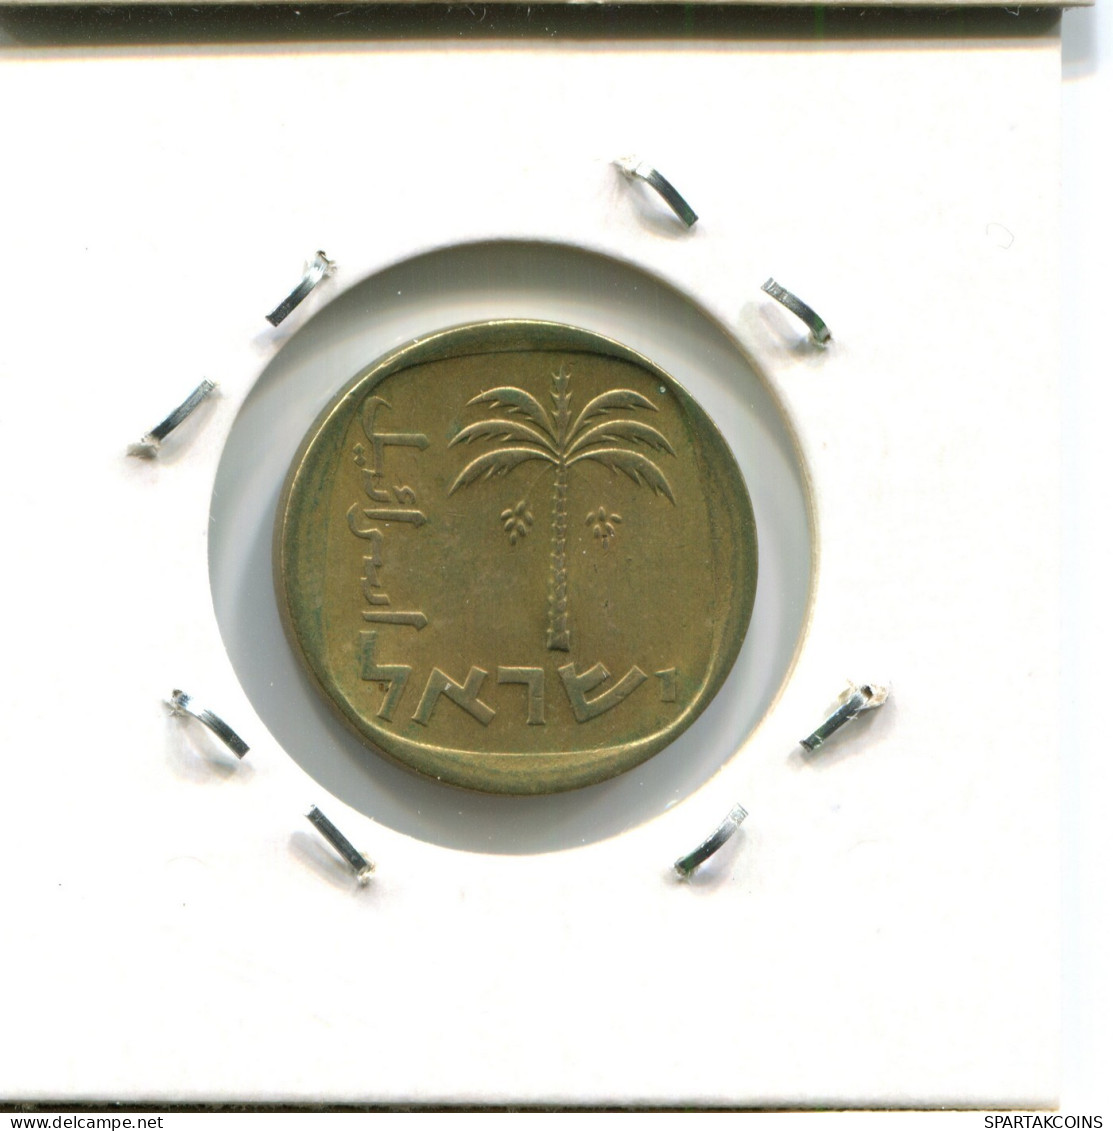 10 AGOROT 1975 ISRAEL Moneda #AW738.E.A - Israel